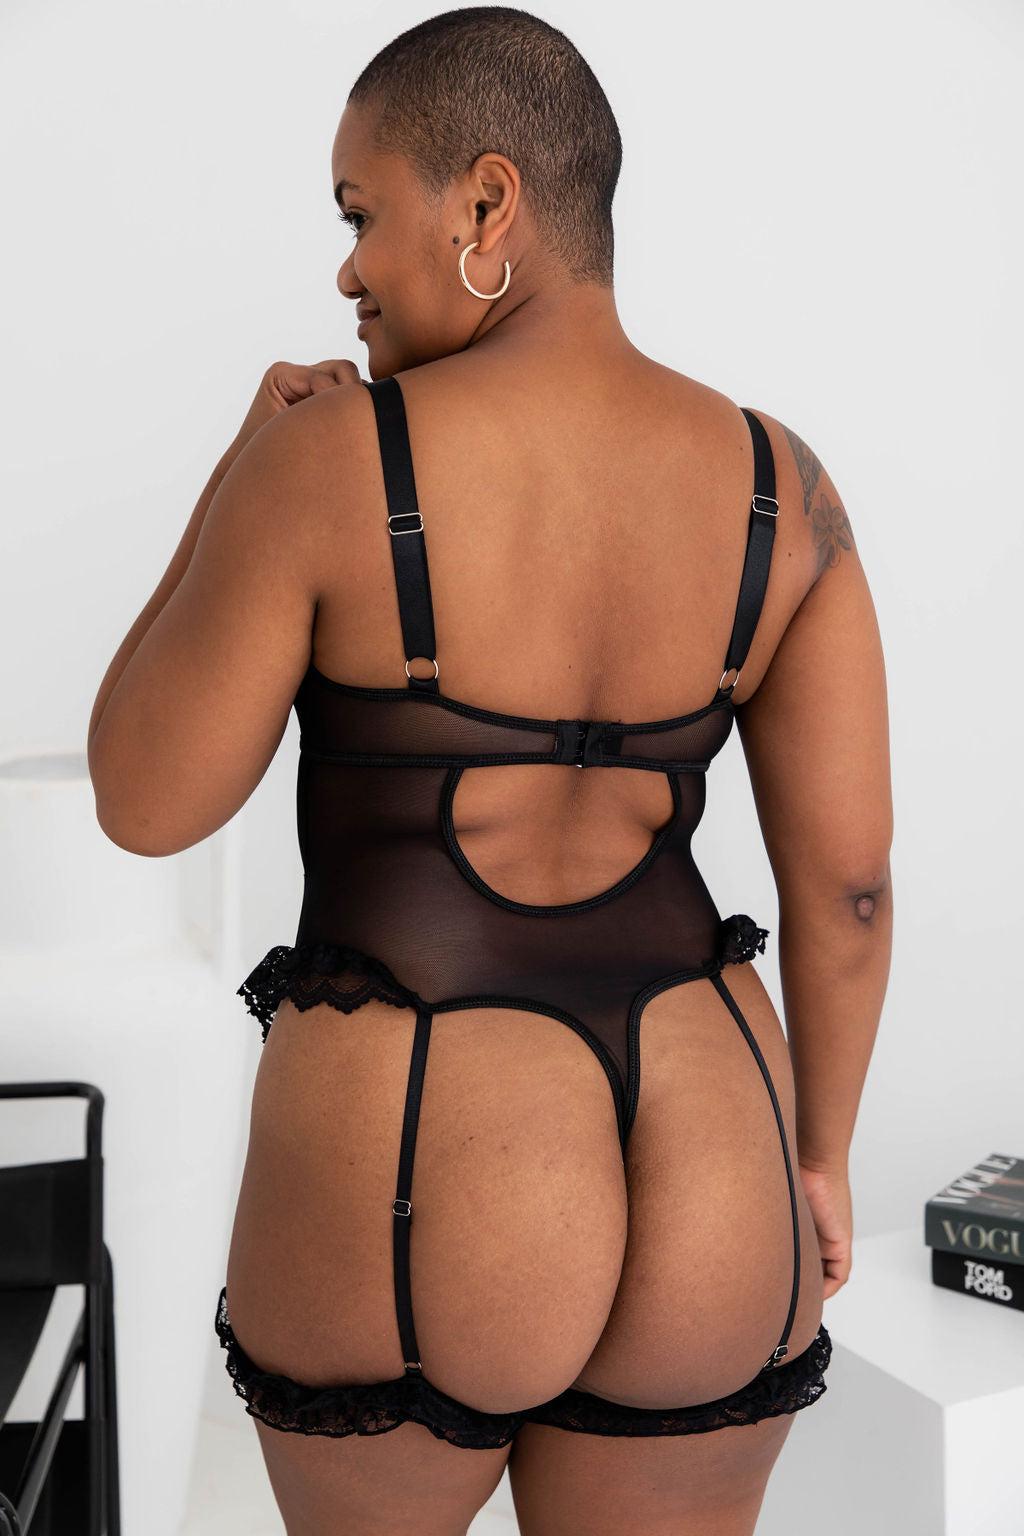 Reign Black Lace Bodysuit - $68.00 - Bodysuit - Naked Curve